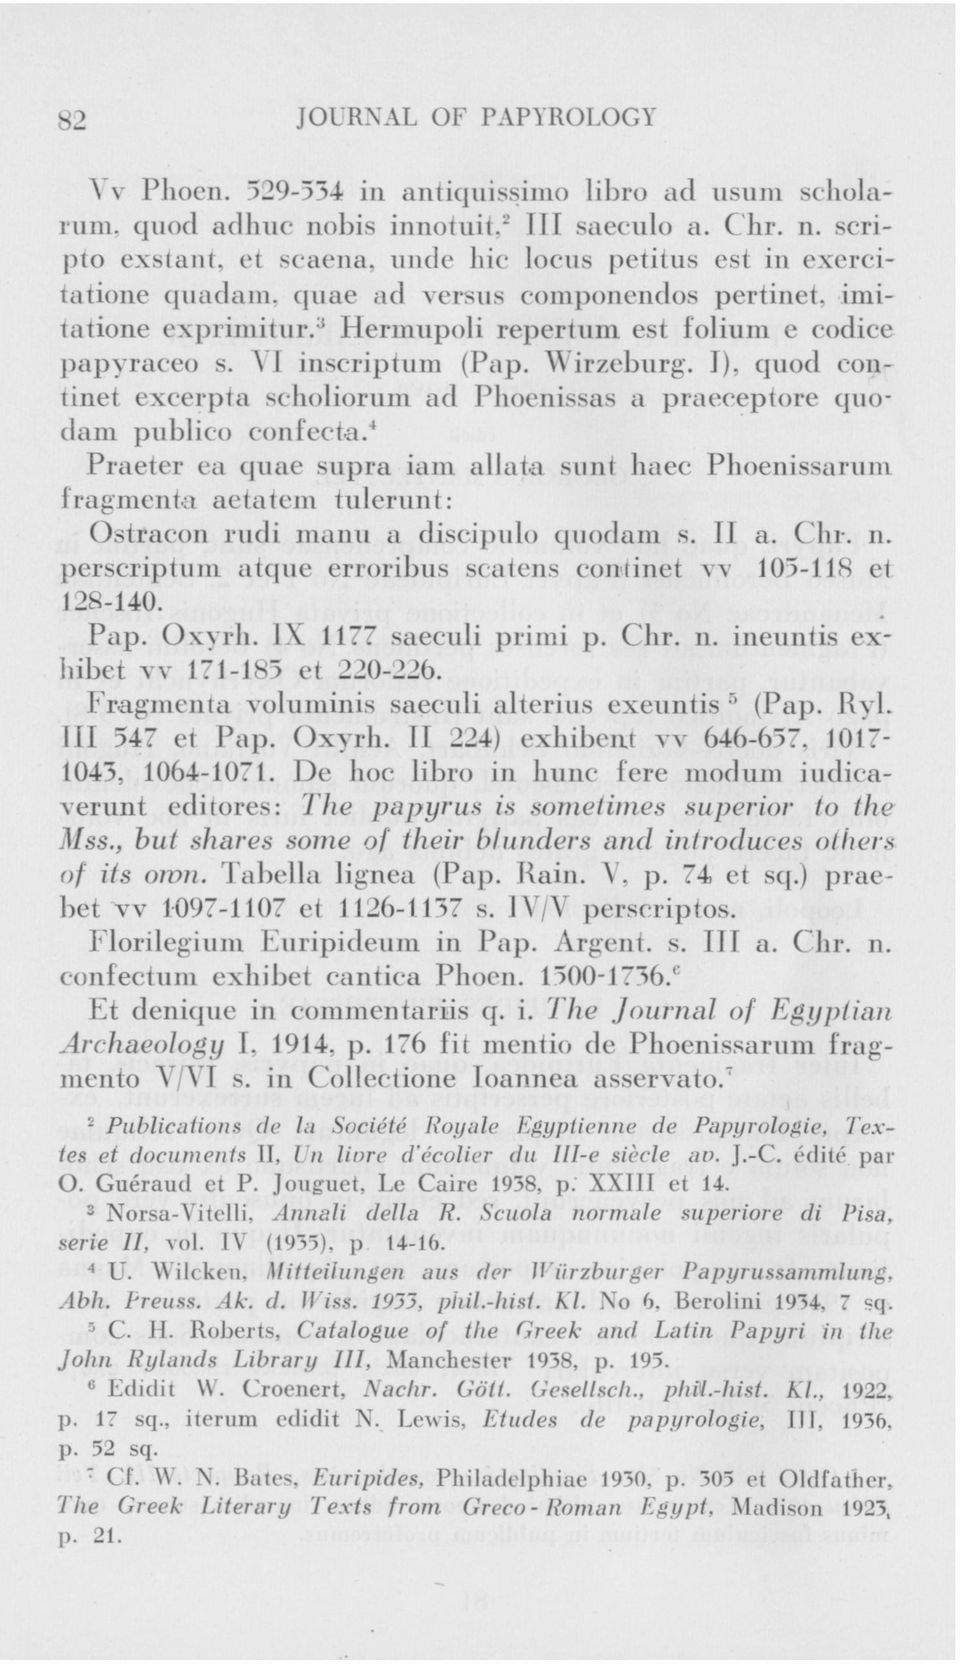 YI inscriptum (Pap. Wirzeburg. I), quod eontinet excerpta scholiorum ad Phoenissas a praeceptore quodam publico confecta.